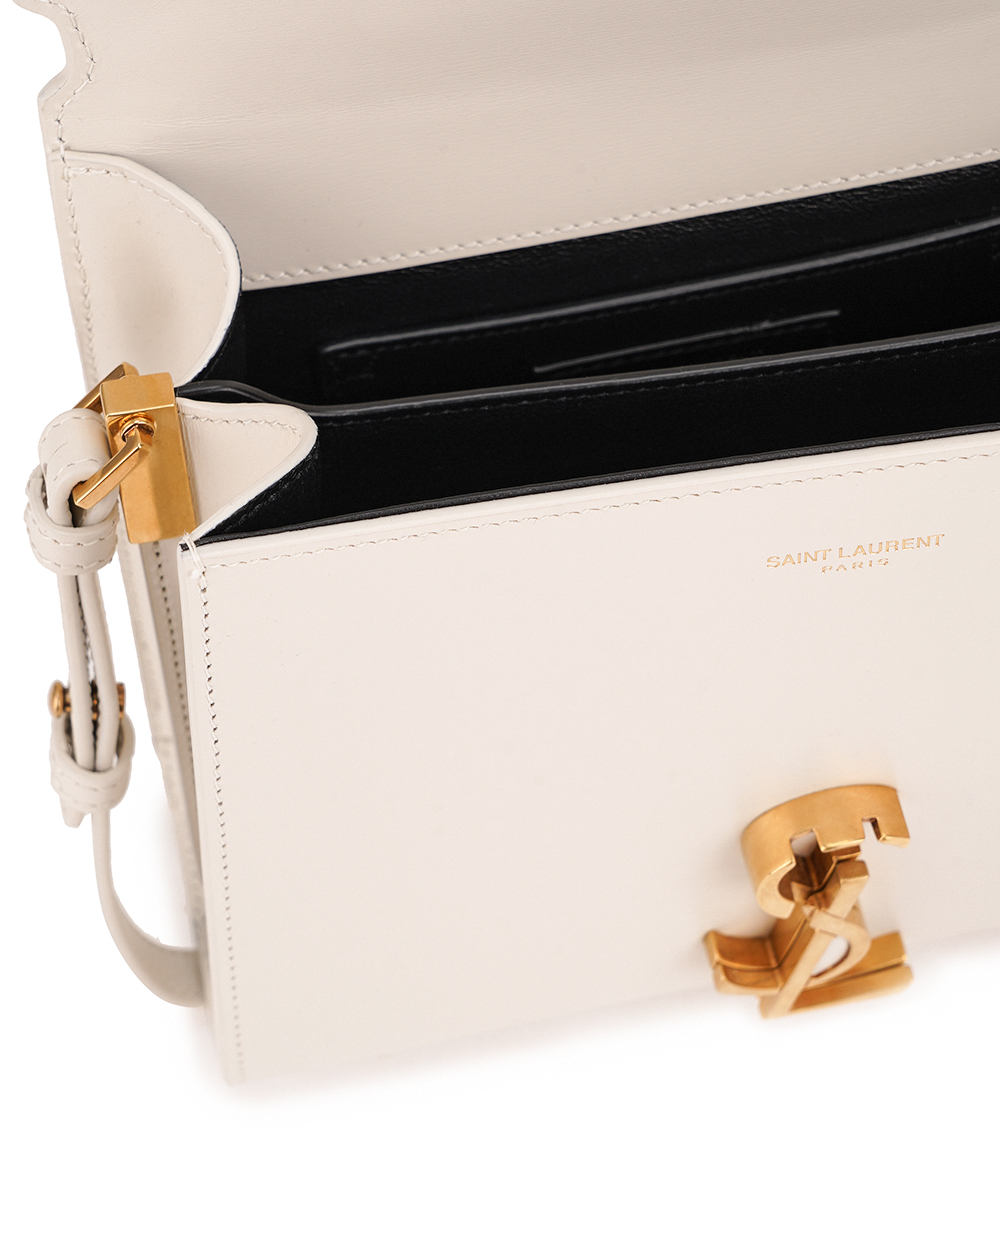 Кожаная сумка Cassandra Mini Saint Laurent 623930-0SX0W, бежевый цвет • Купить в интернет-магазине Kameron